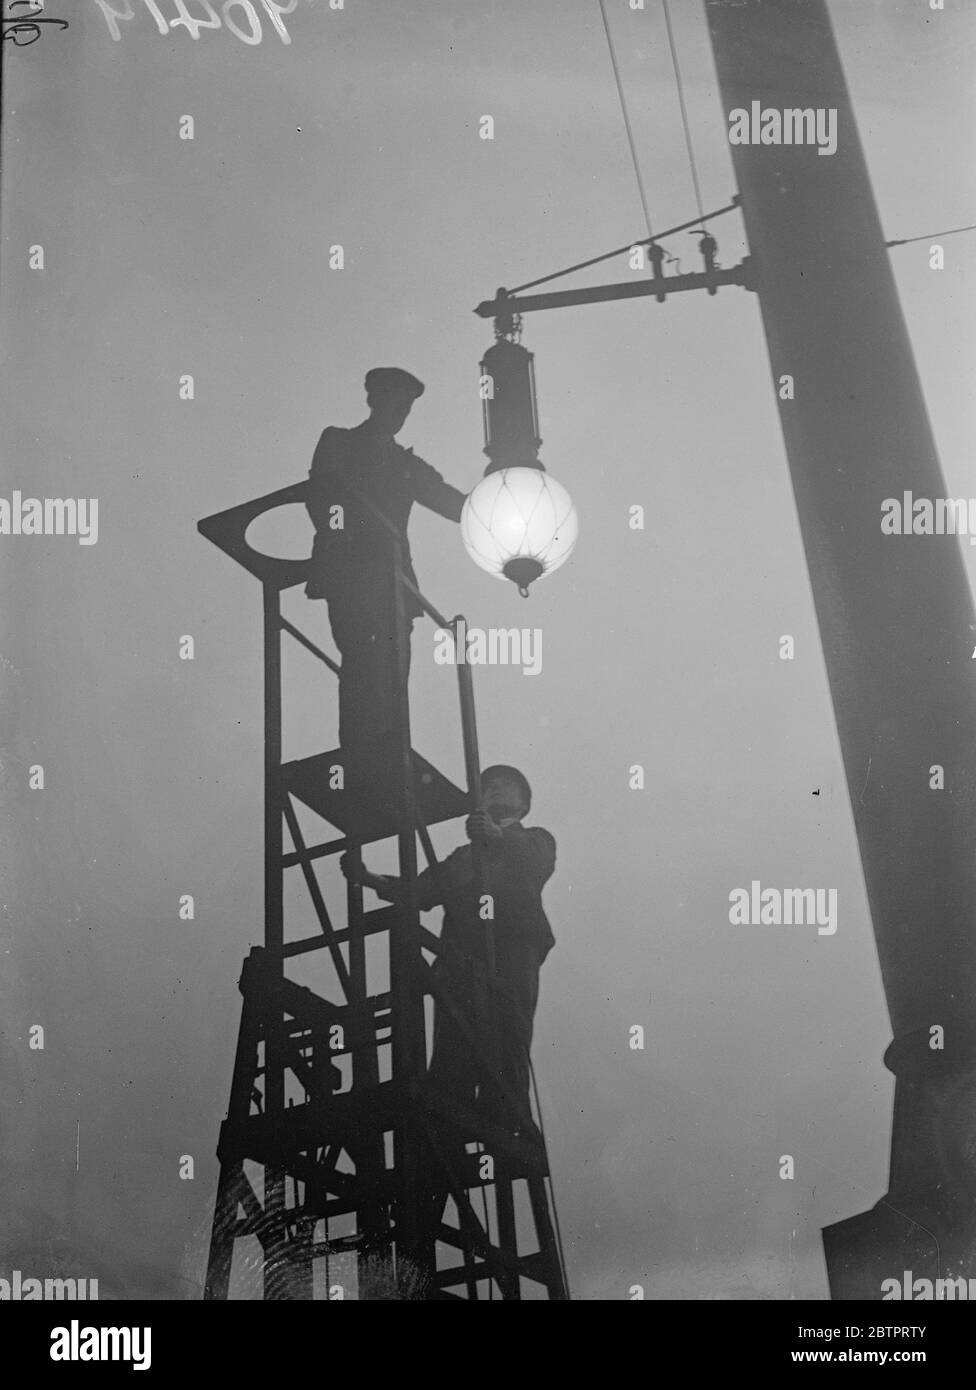 La niebla se ralentiza, Londres. Miles de londinenses se vieron en camino de trabajar por la densa niebla blanca que les llevó los servicios de transporte. Los trabajadores se perfilaron mientras asistían a una lámpara en el sombrío pesimismo de la estación de Liverpool Street. 18 de octubre de 1937 Foto de stock